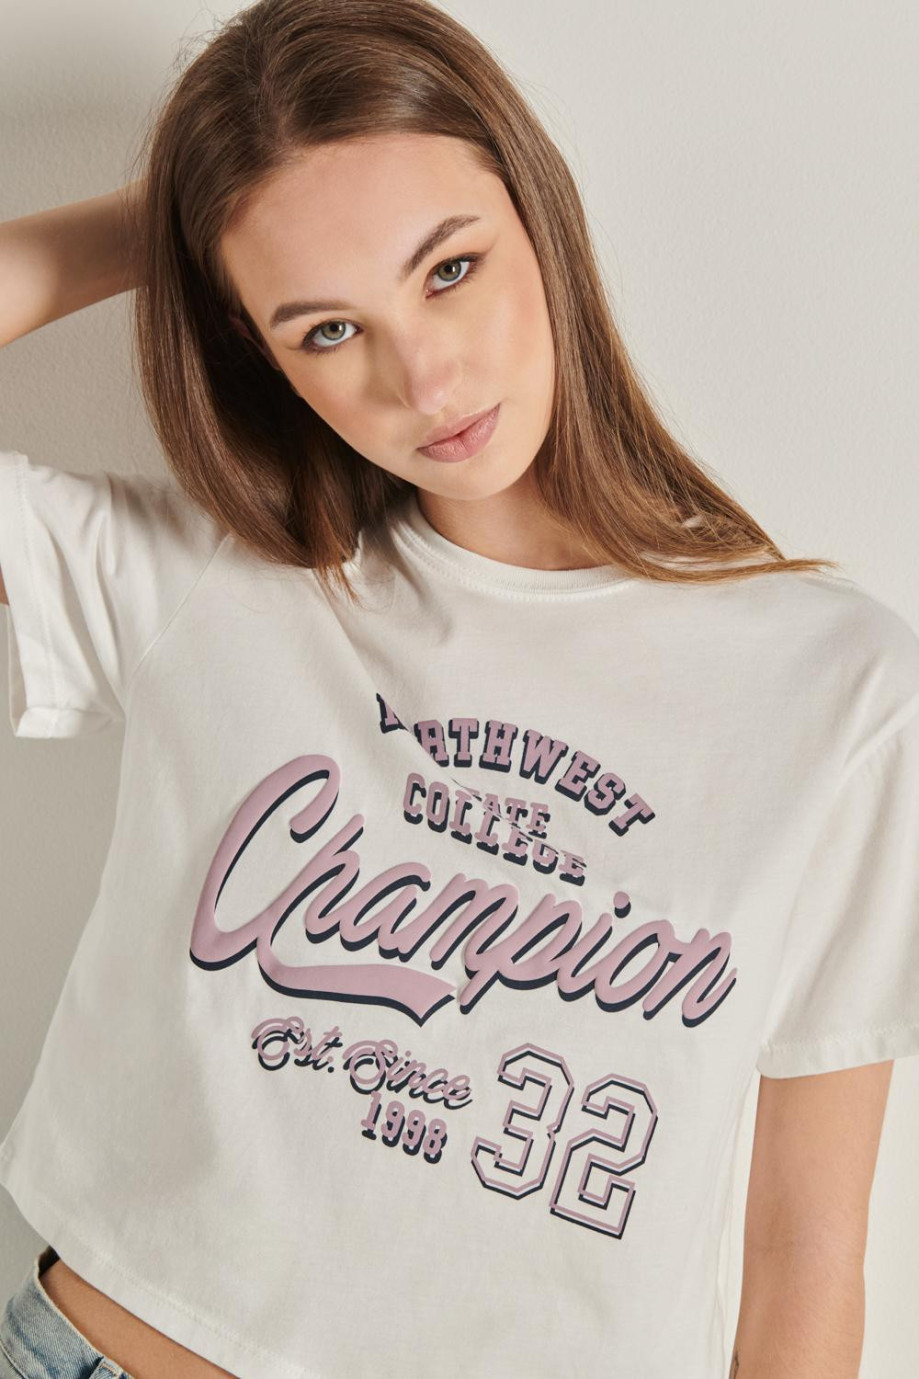 Camiseta crop top crema clara con diseño college y manga corta